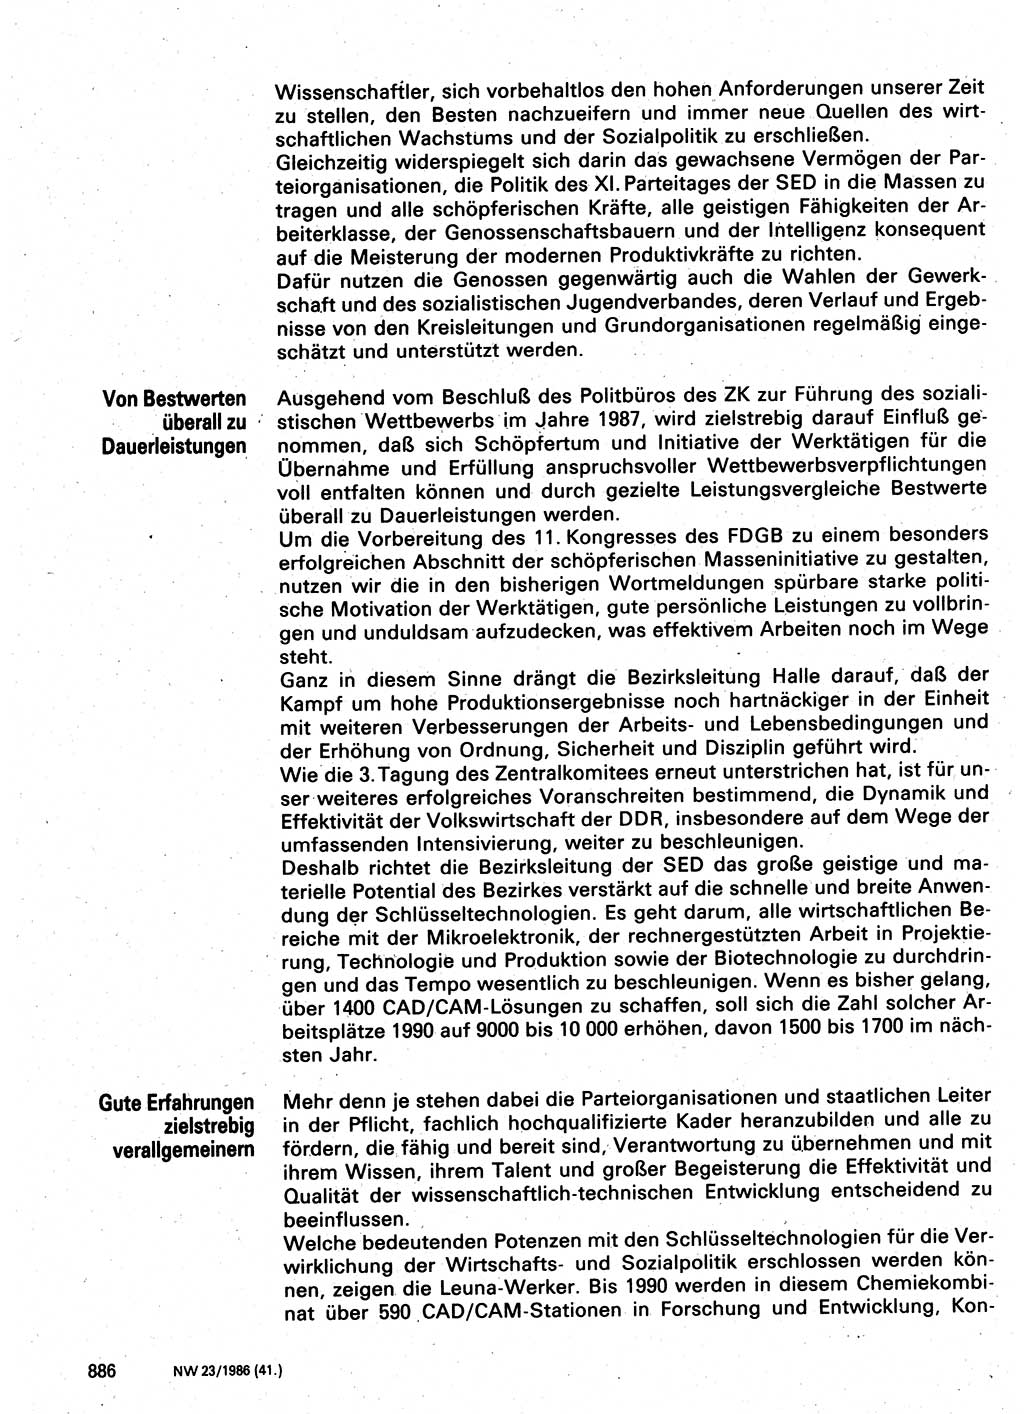 Neuer Weg (NW), Organ des Zentralkomitees (ZK) der SED (Sozialistische Einheitspartei Deutschlands) für Fragen des Parteilebens, 41. Jahrgang [Deutsche Demokratische Republik (DDR)] 1986, Seite 886 (NW ZK SED DDR 1986, S. 886)